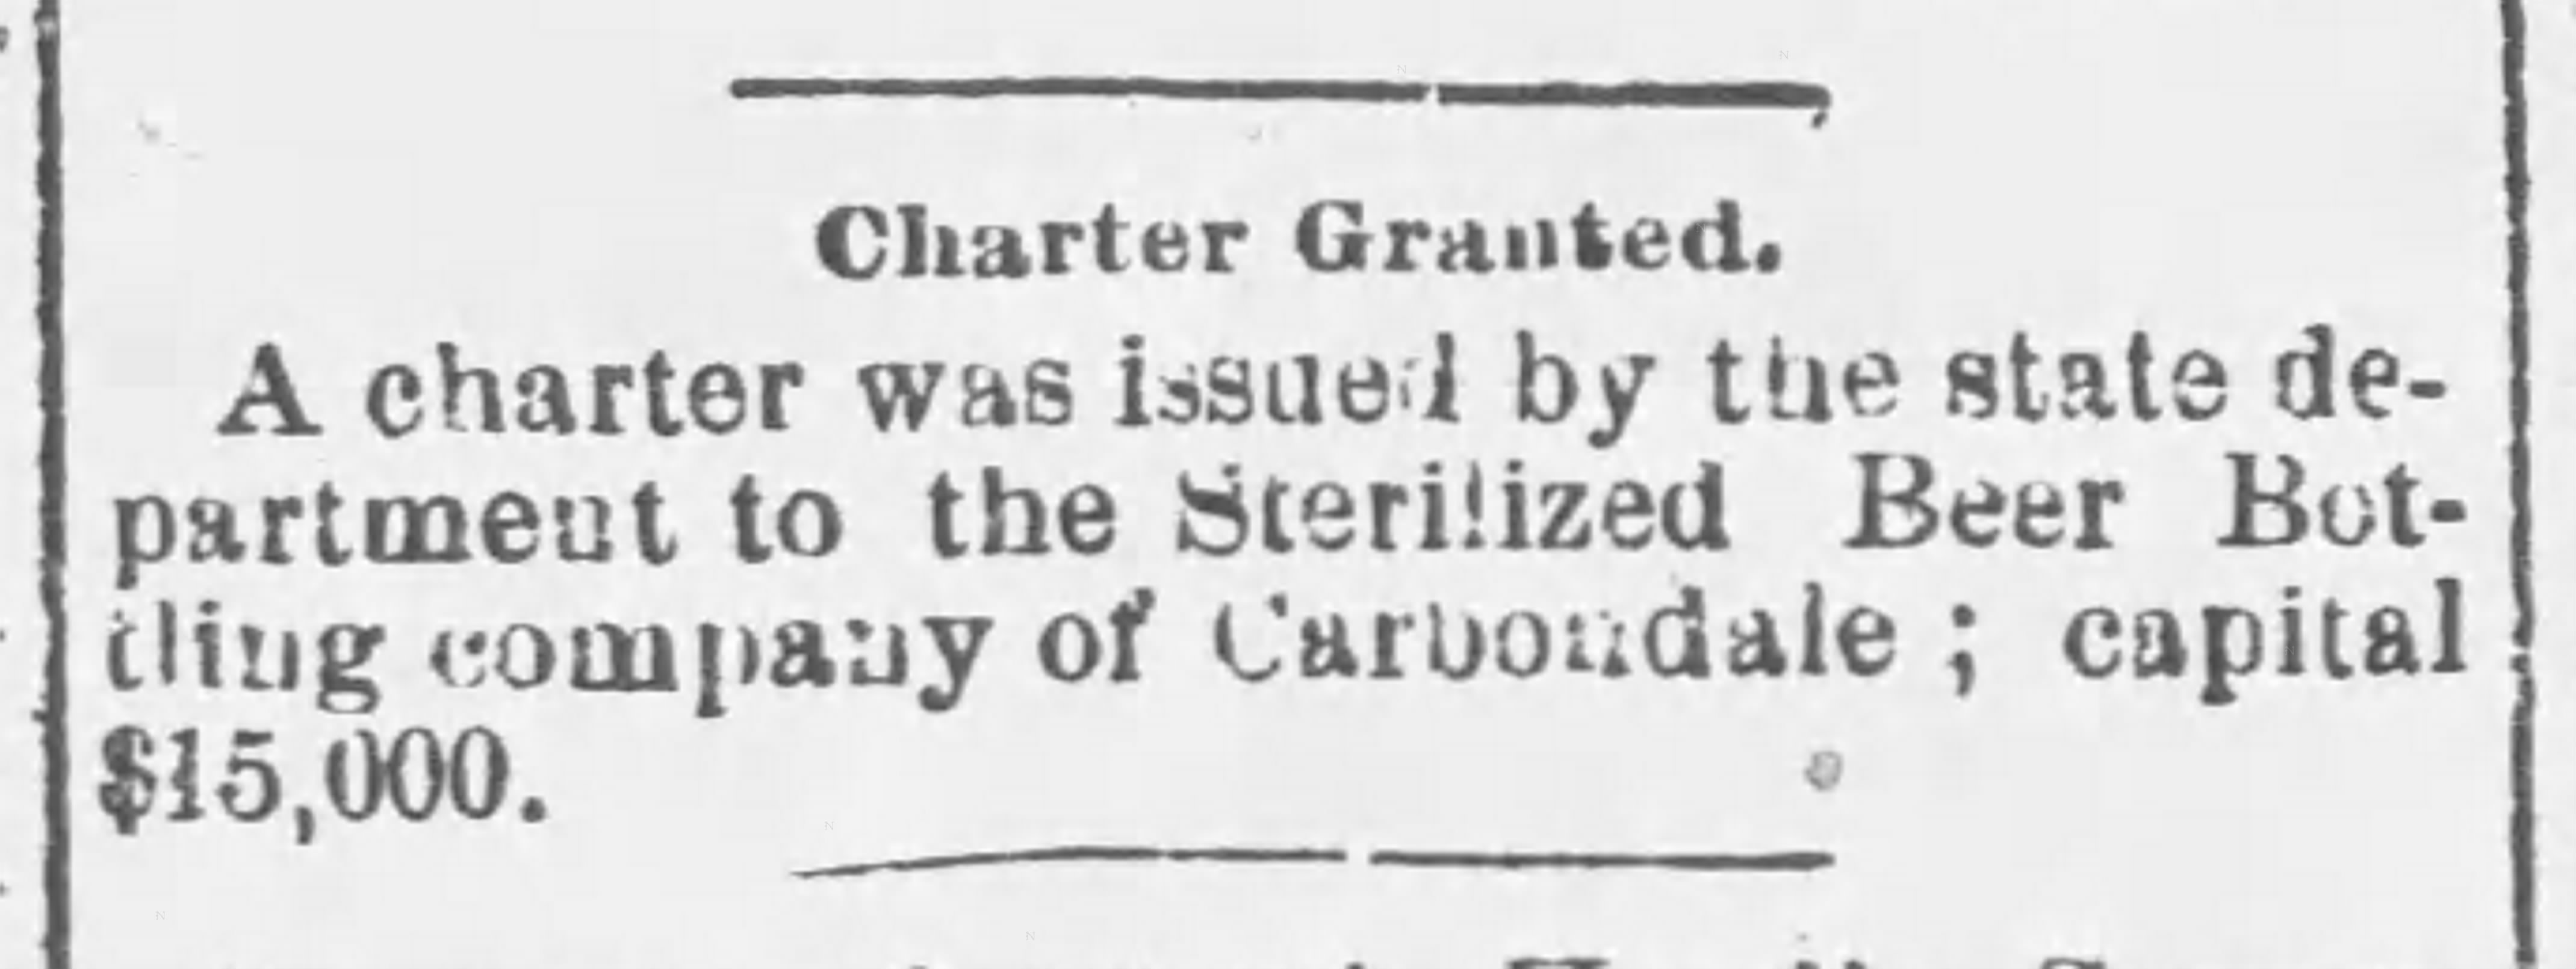 Sterilized Beer Bottling Co. Charter_The_Carbondale_Leader_Penn_Fri__Feb_12__1904.jpg